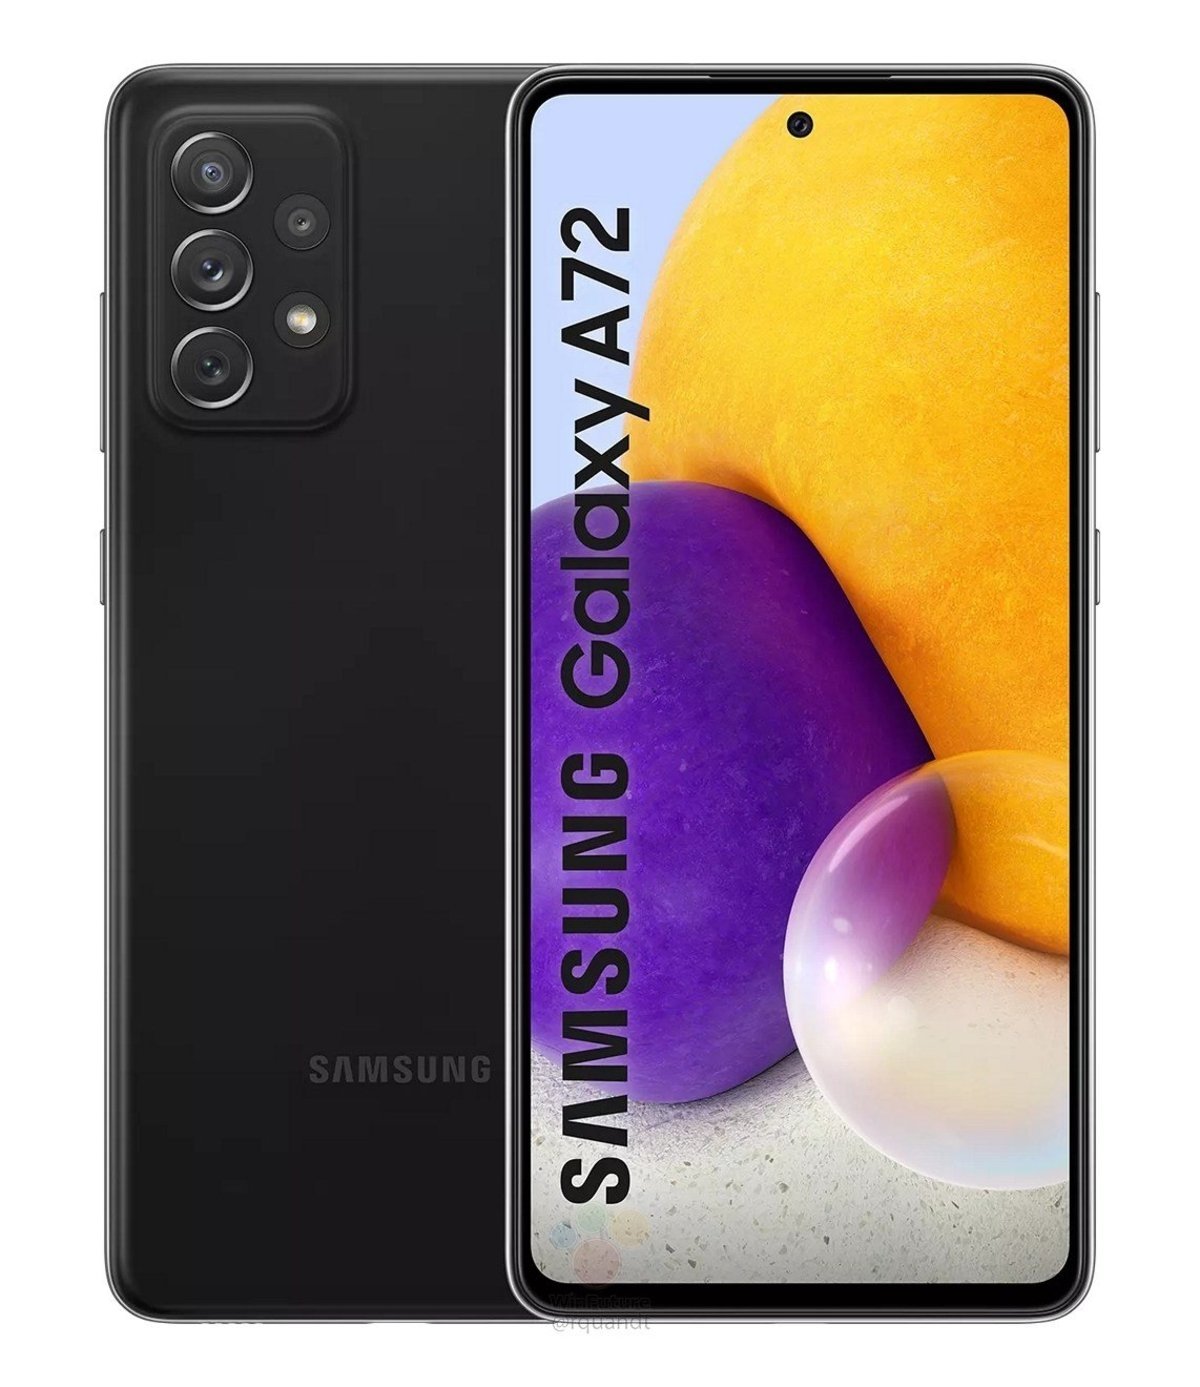 El Samsung Galaxy A72 en color negro